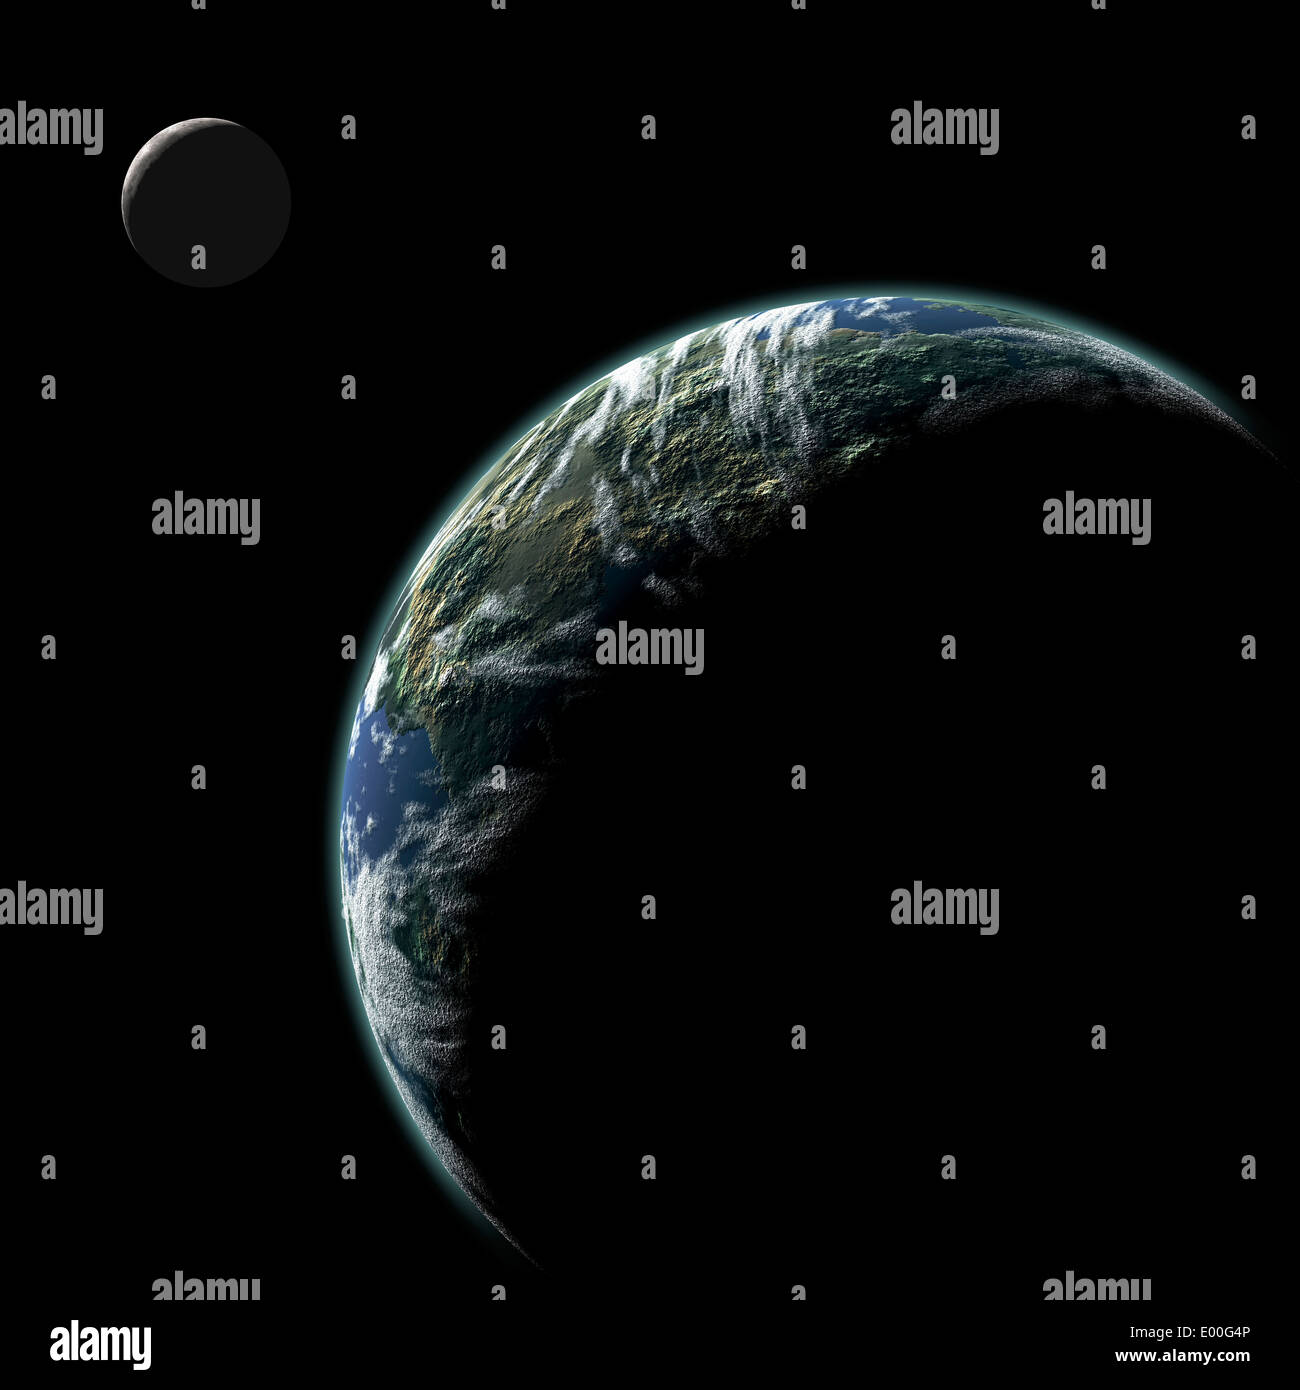 Un artiste pour l'inscription d'une Planète Terre-like dans l'espace profond avec l'orbite lune illuminée par un soleil à proximité. Banque D'Images